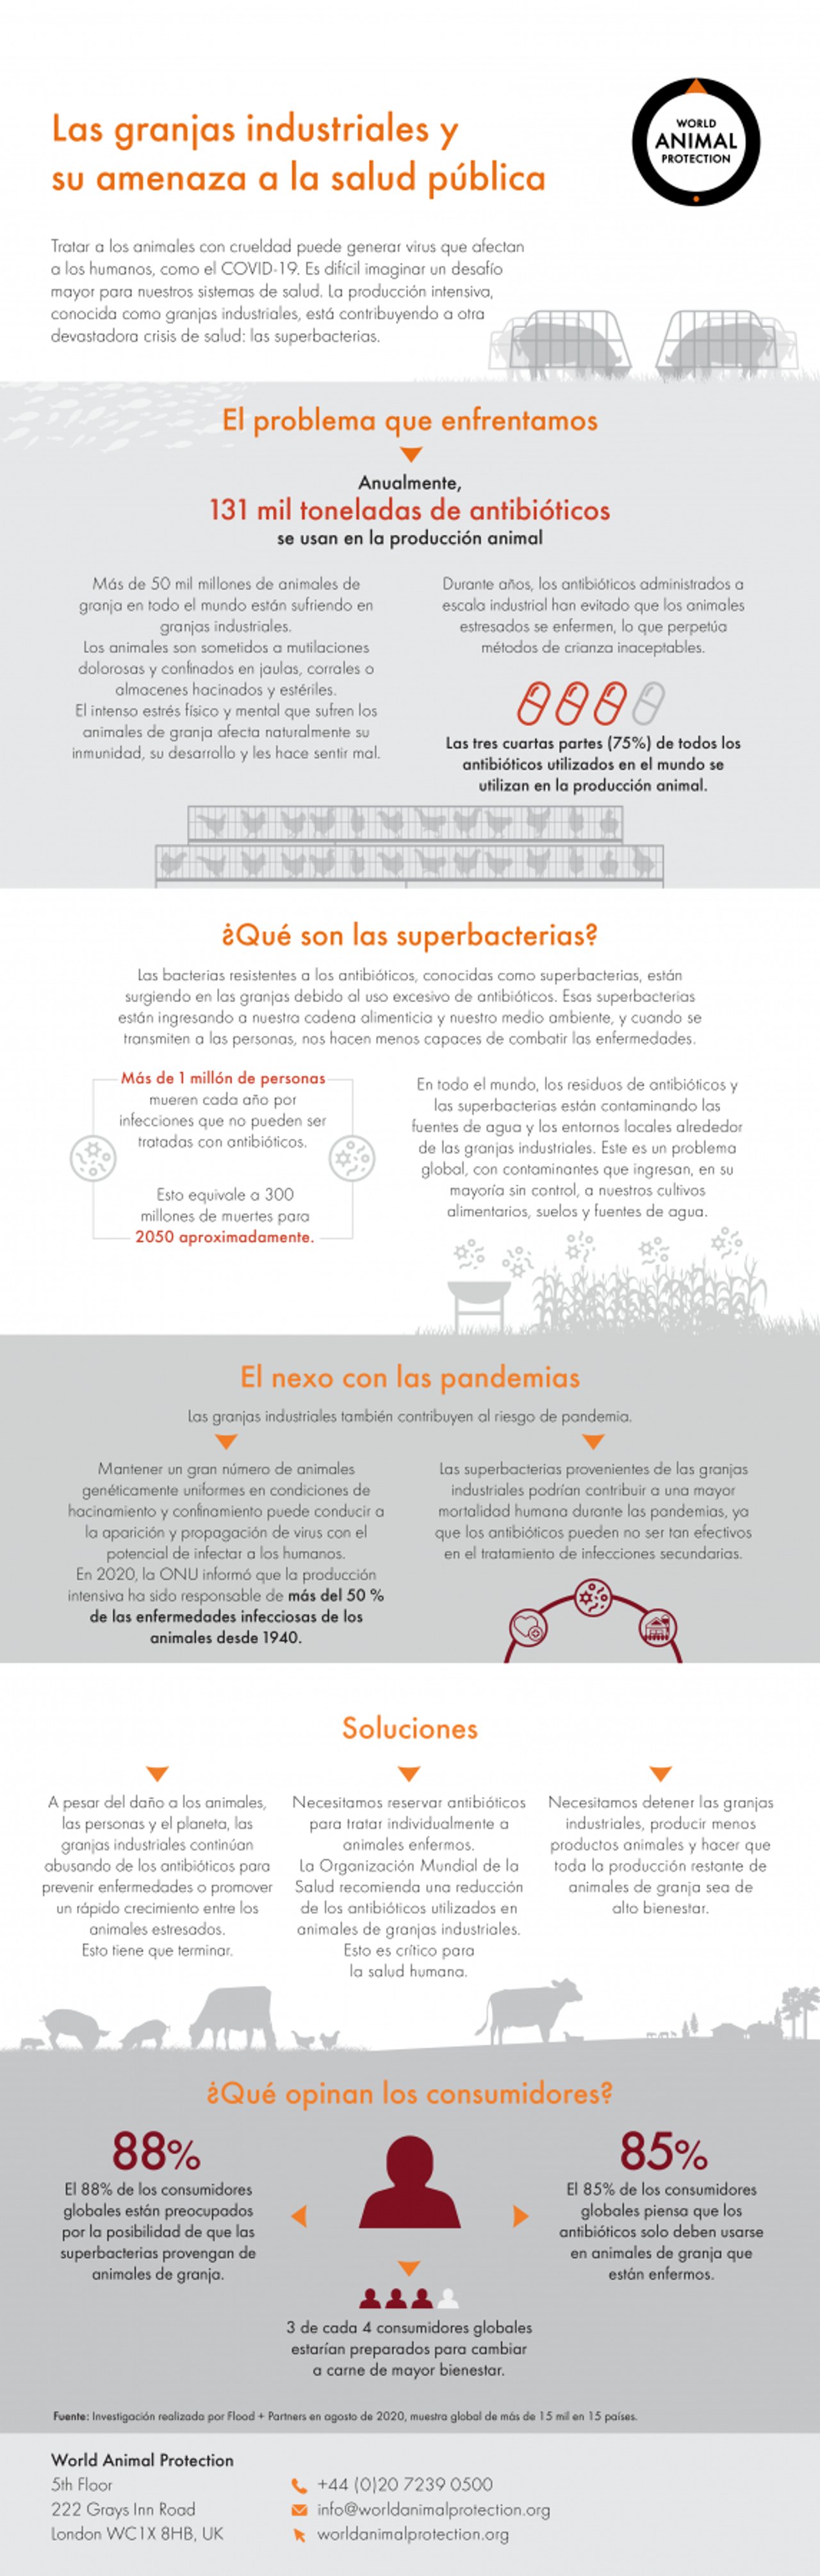 Infografia explicando qué son las superbacterias y su relación con la producción intensiva